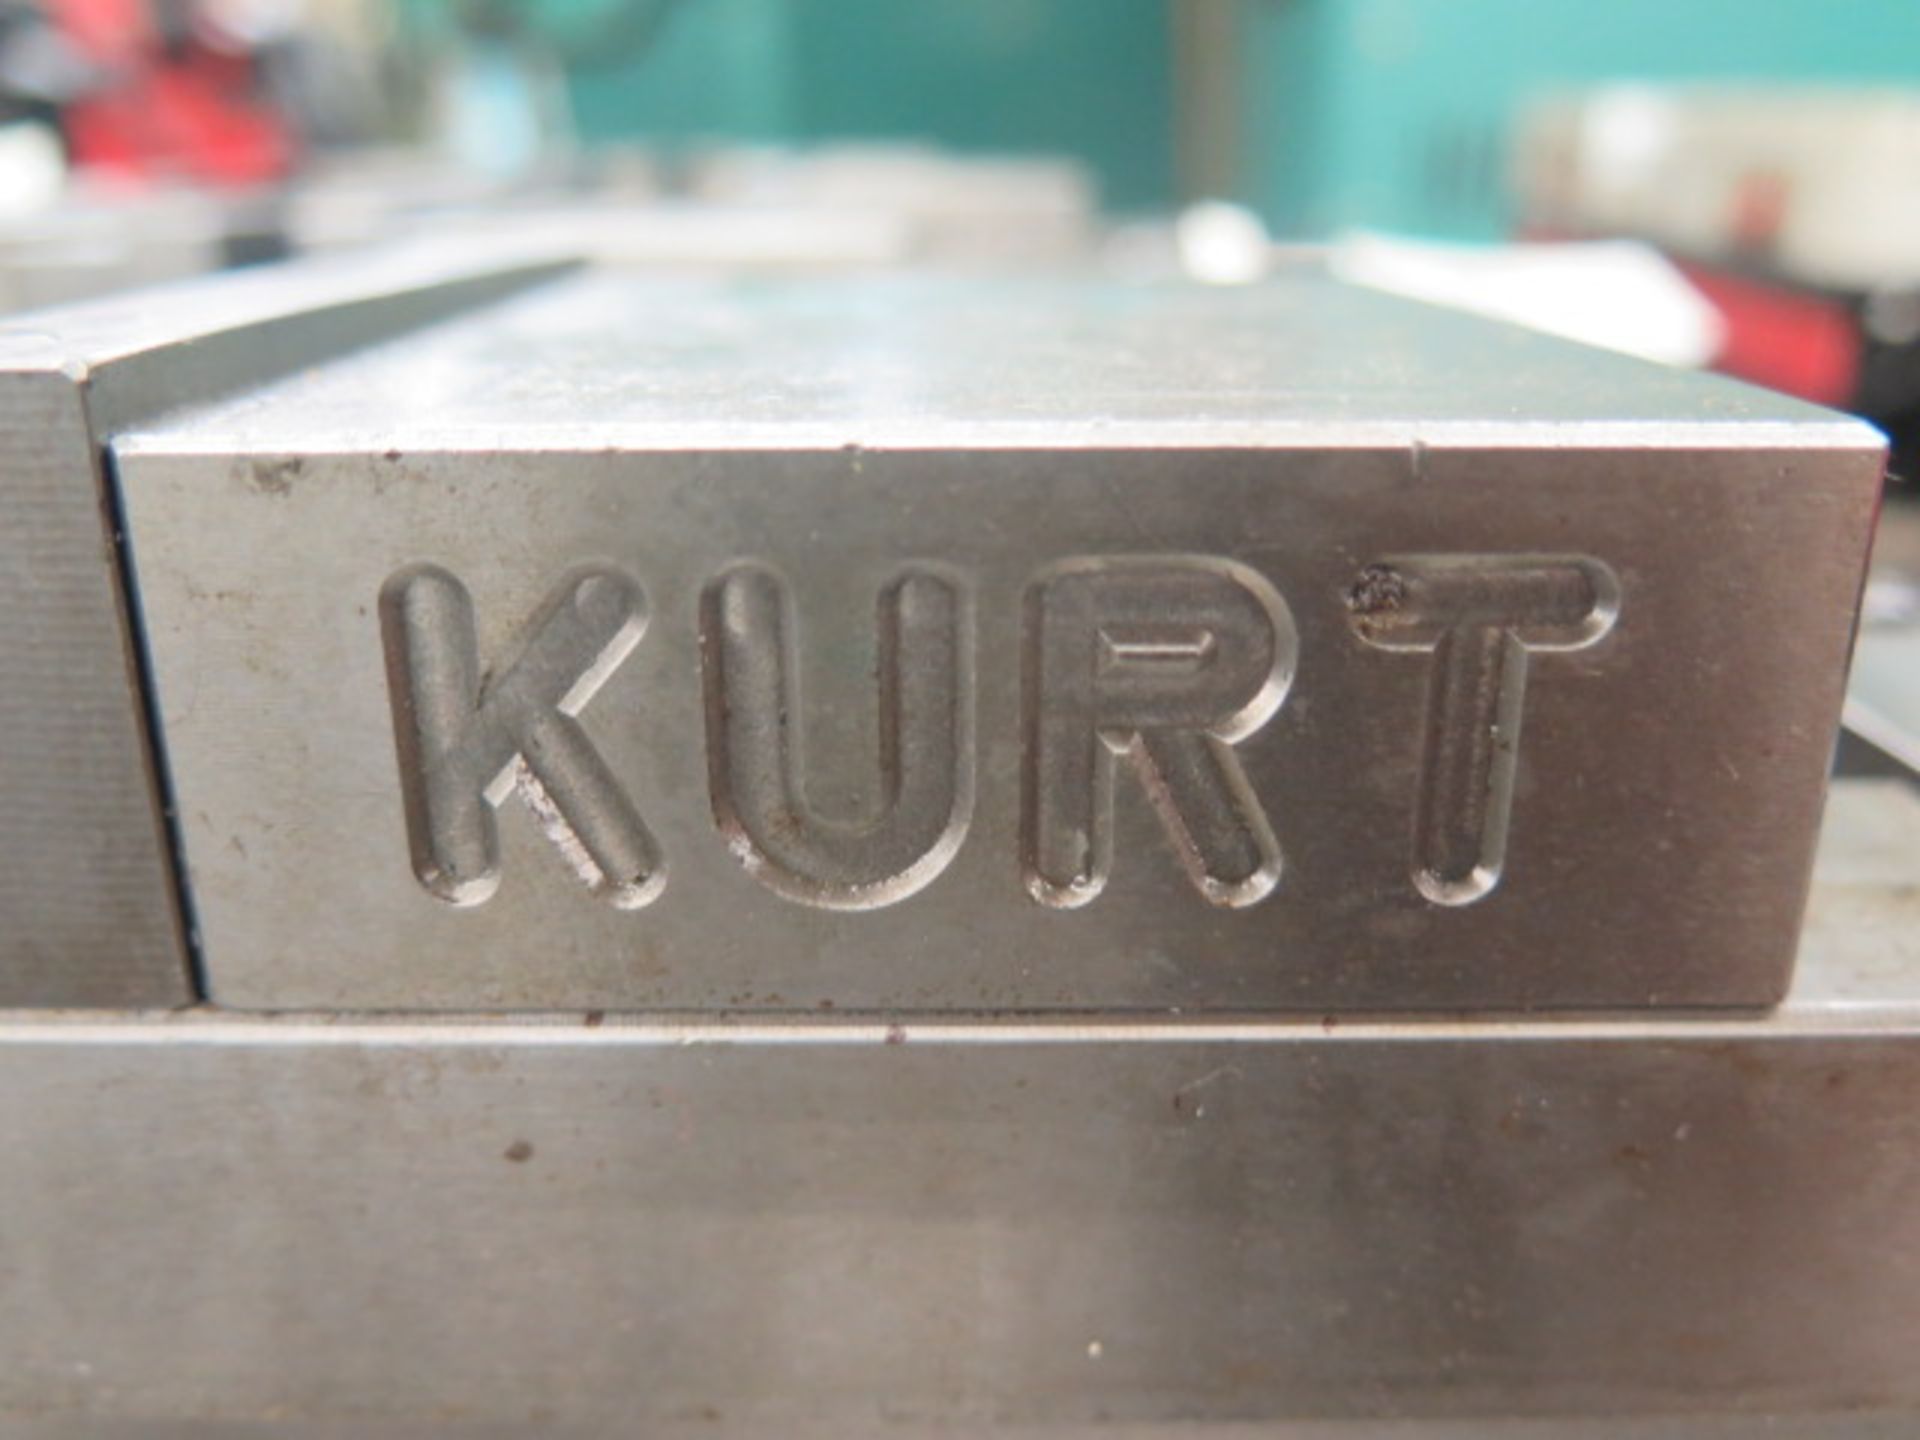 Kurt 4” Double-Lock Vises (2) w/ Mounting Base Plate - Image 4 of 4